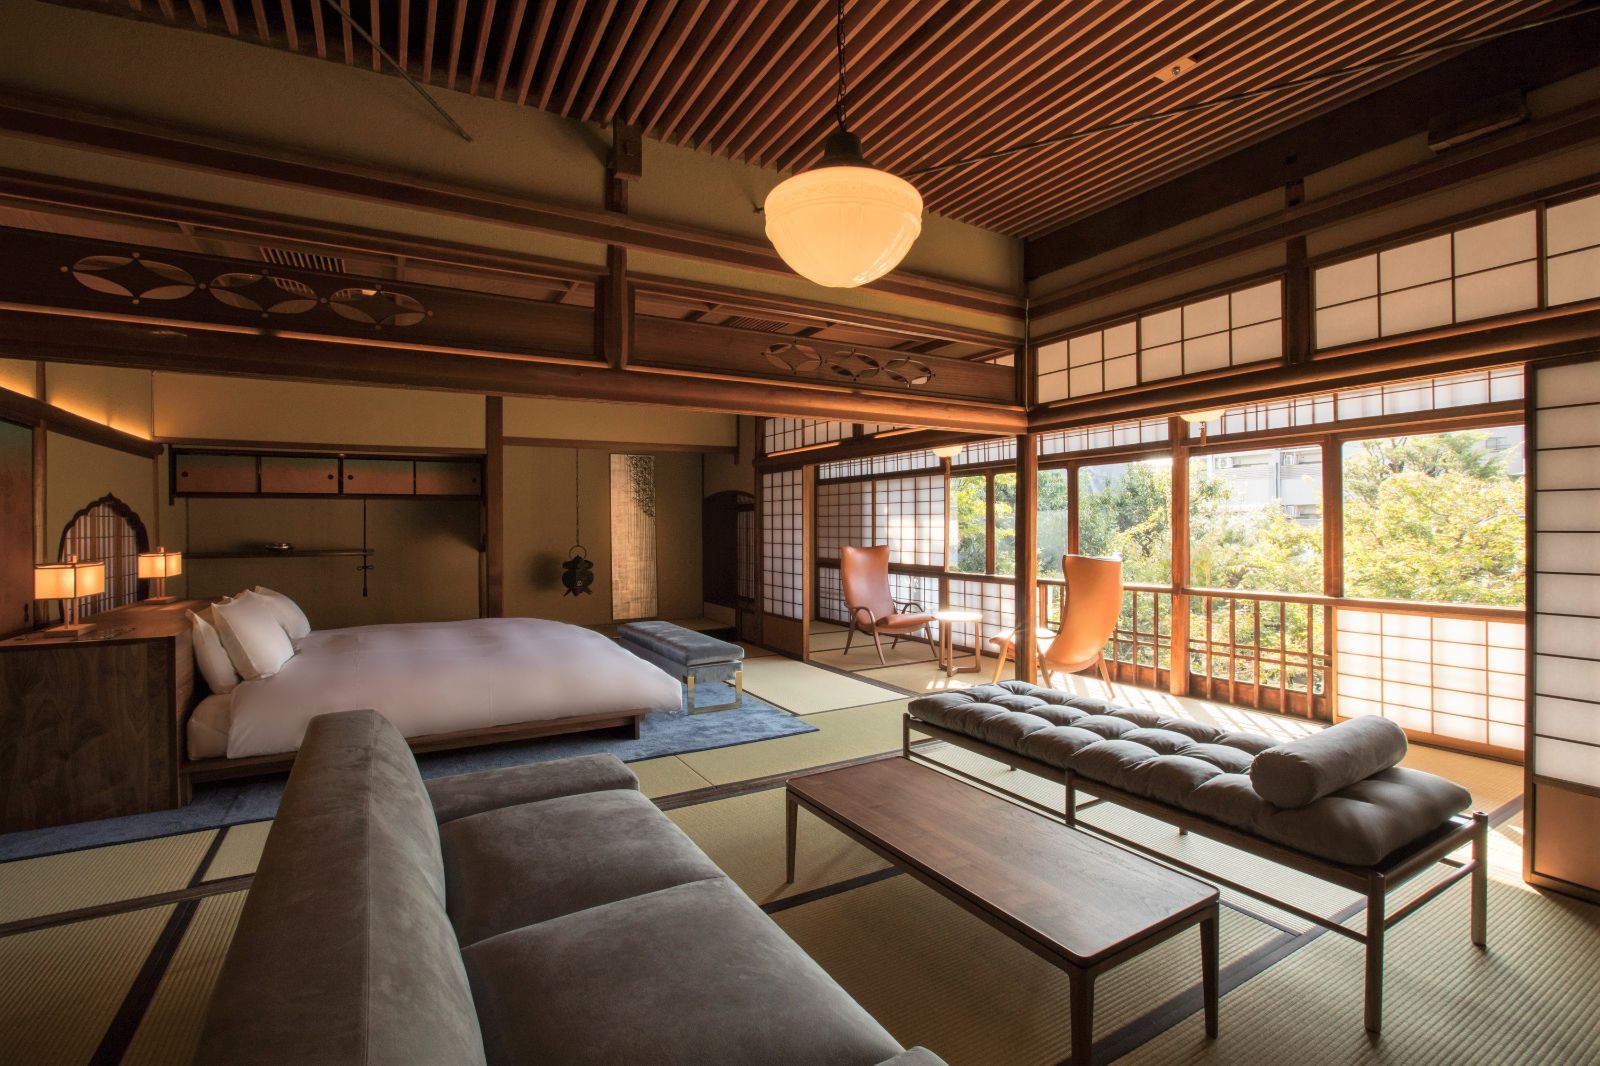 Living area at Sowaka ryokan in Kyoto, Japan